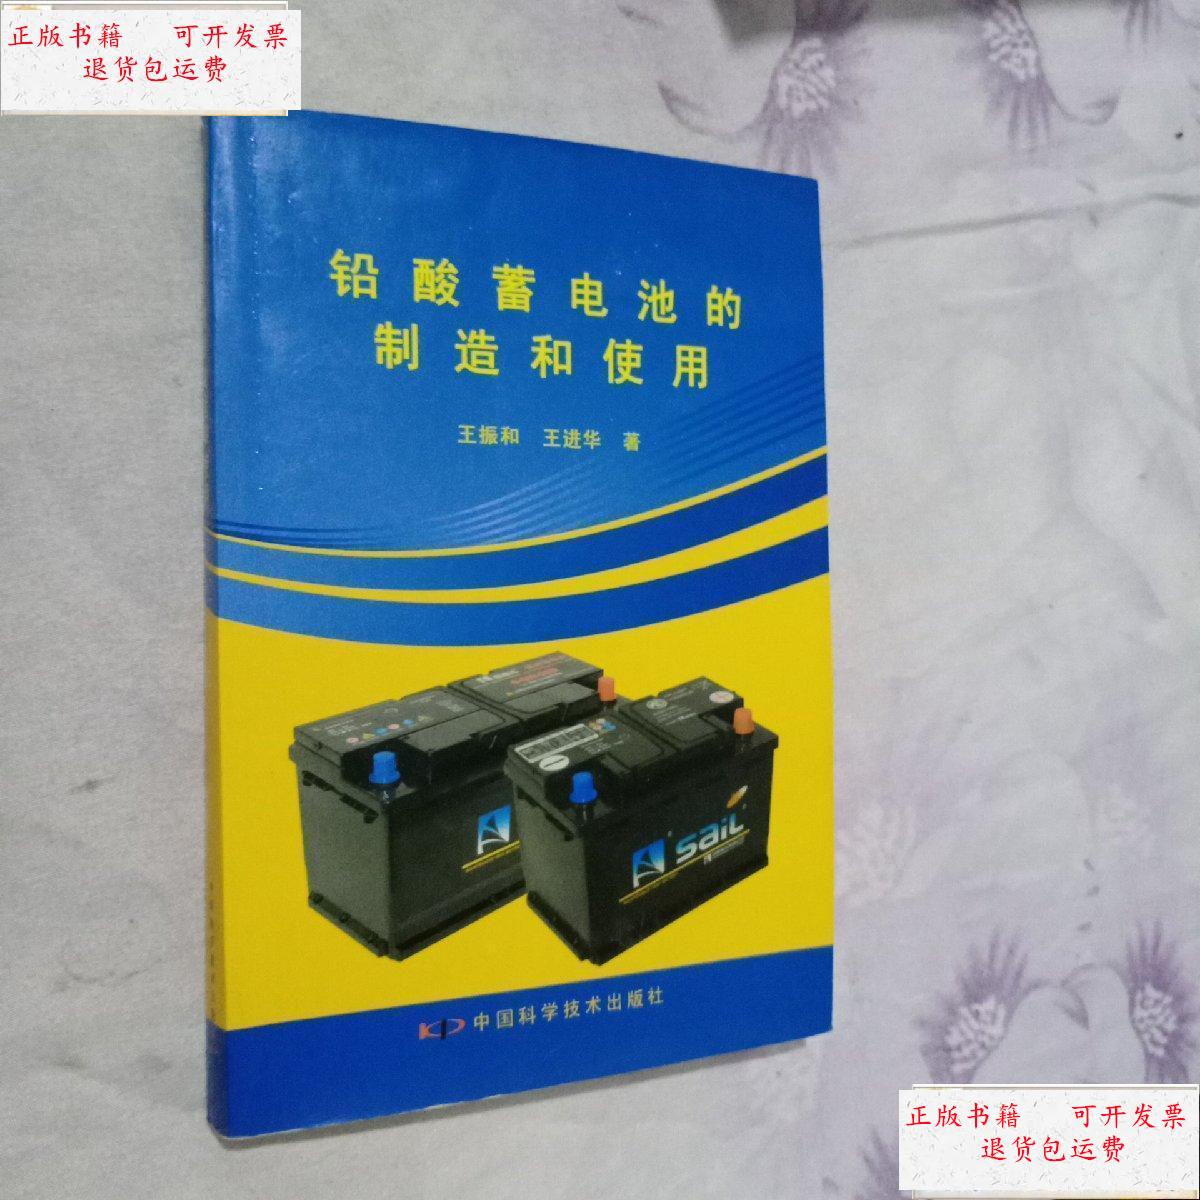 【二手9成新】铅酸蓄电池充的制造和使用 /王振和 中国科学技术出版社